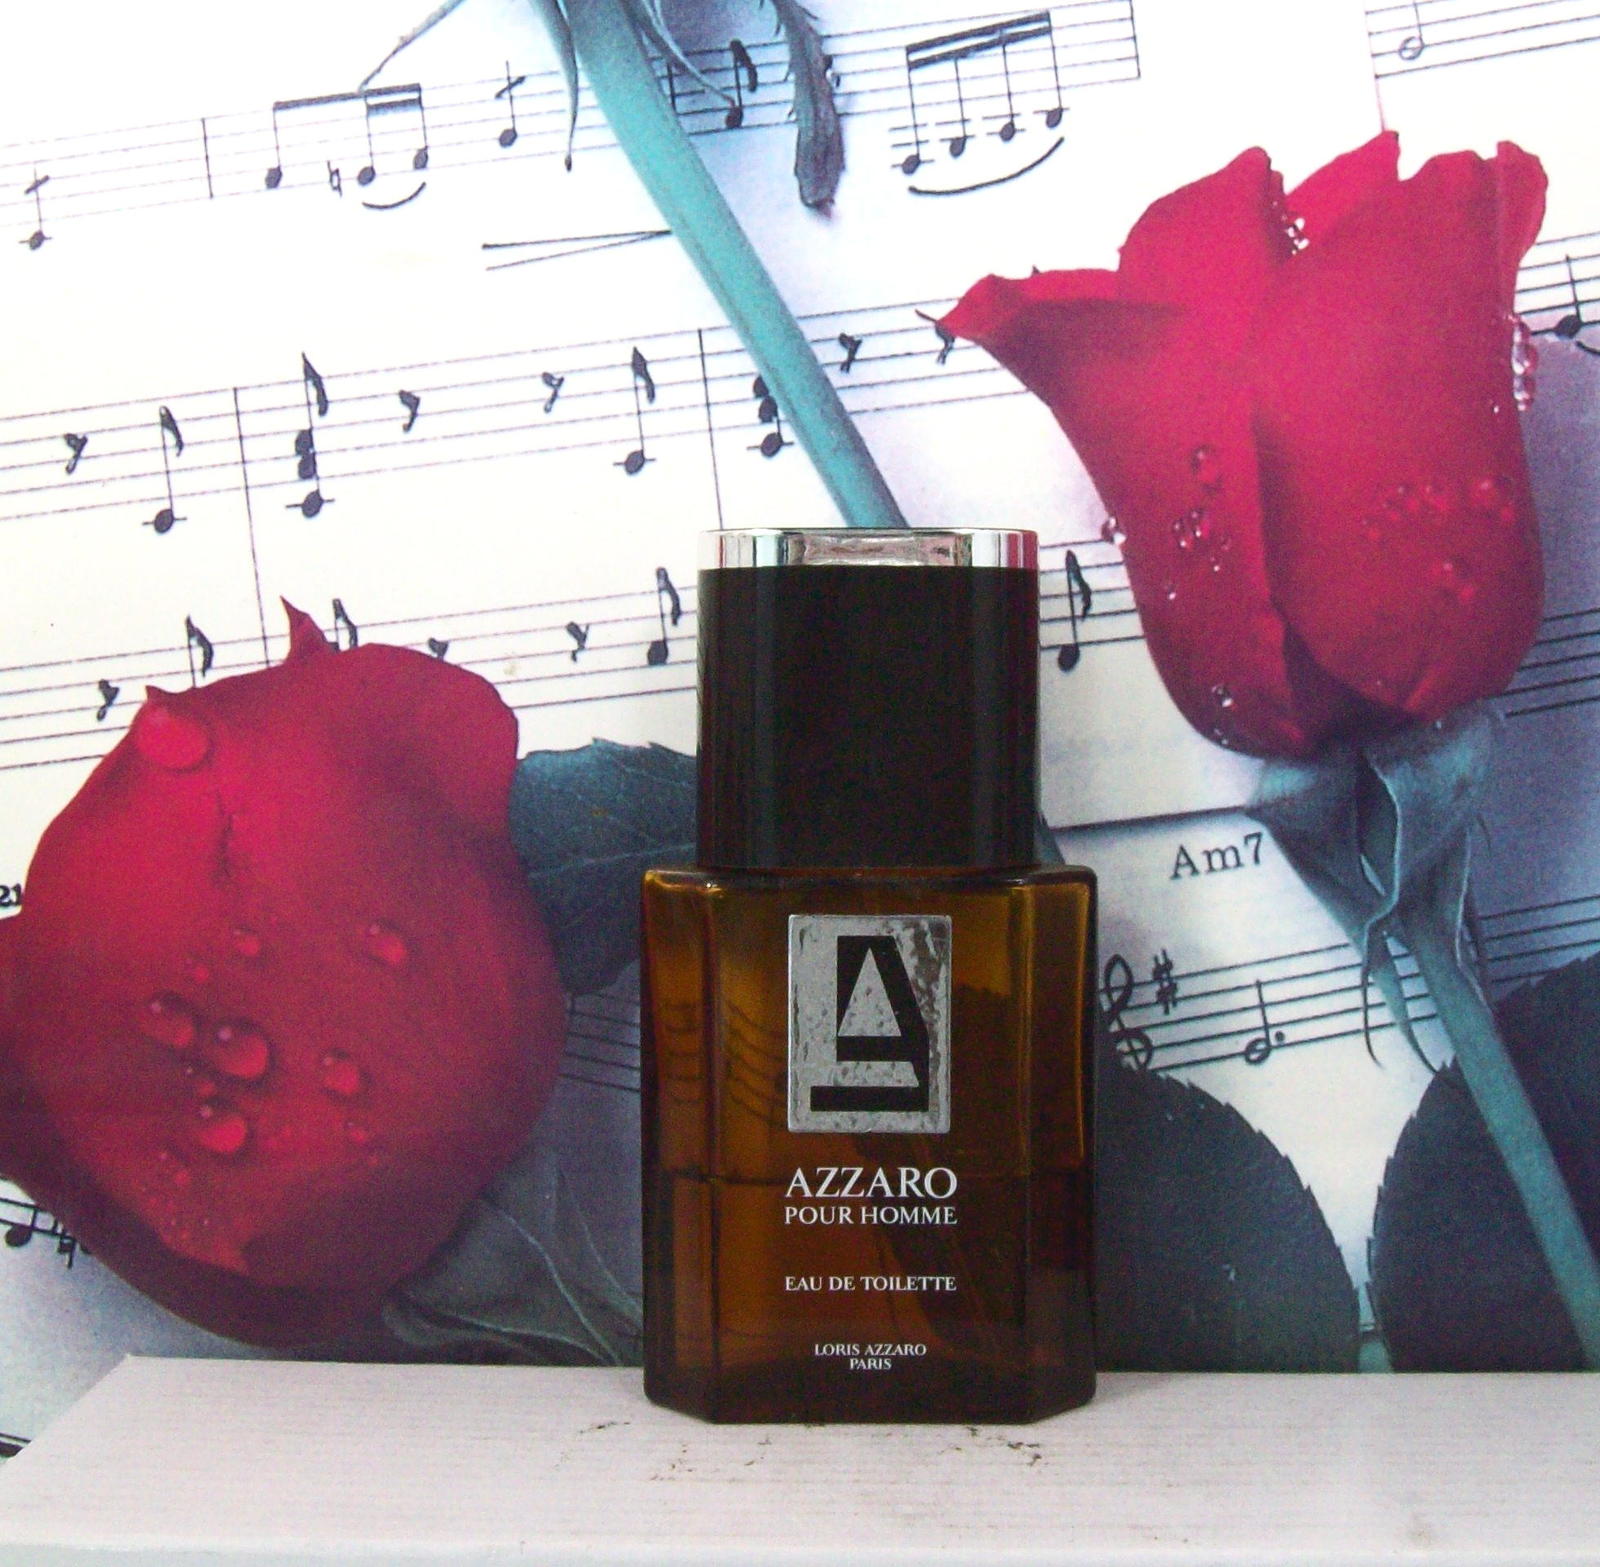 Azzaro Pour Homme 1.7 FL. OZ. EDT Spray 40% Full. Vintage. - $59.99